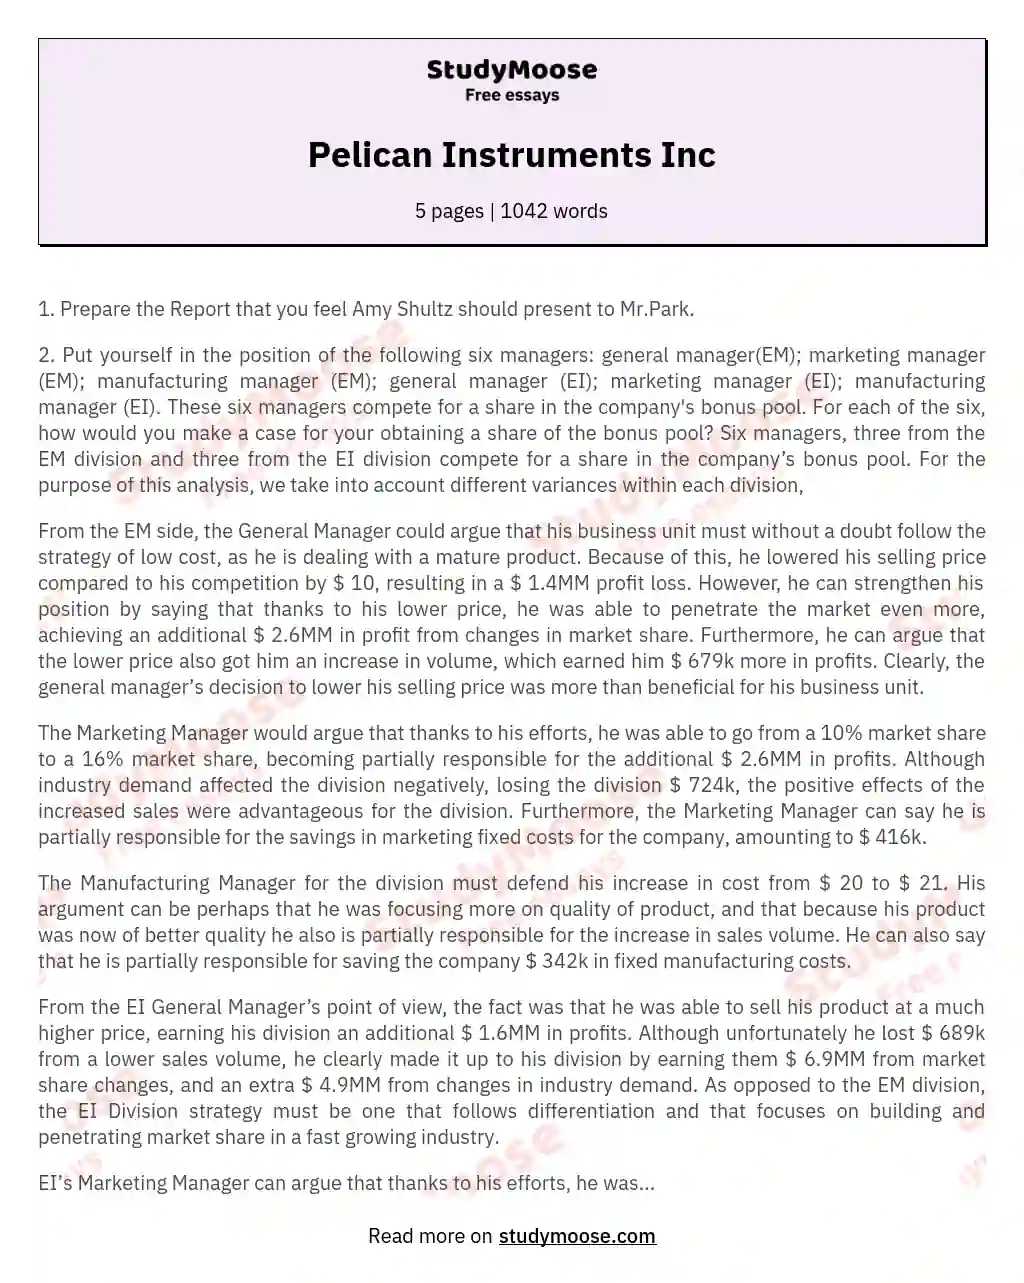 Pelican Instruments Inc essay